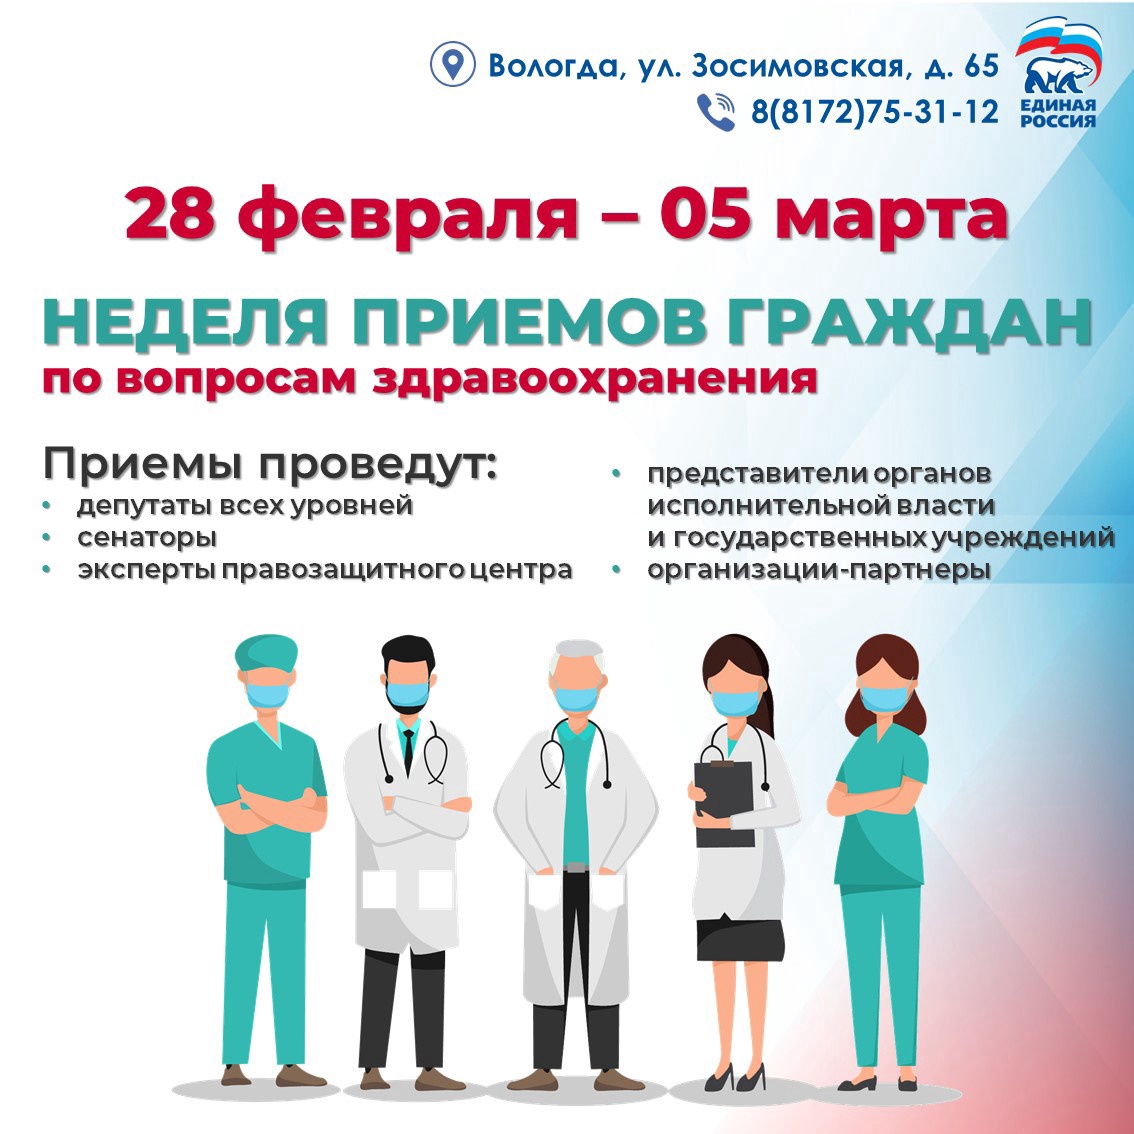 С 28 февраля по 05 марта в сети Общественных приёмных «Единой России» пройдет Неделя приемов граждан по вопросам здравоохранения